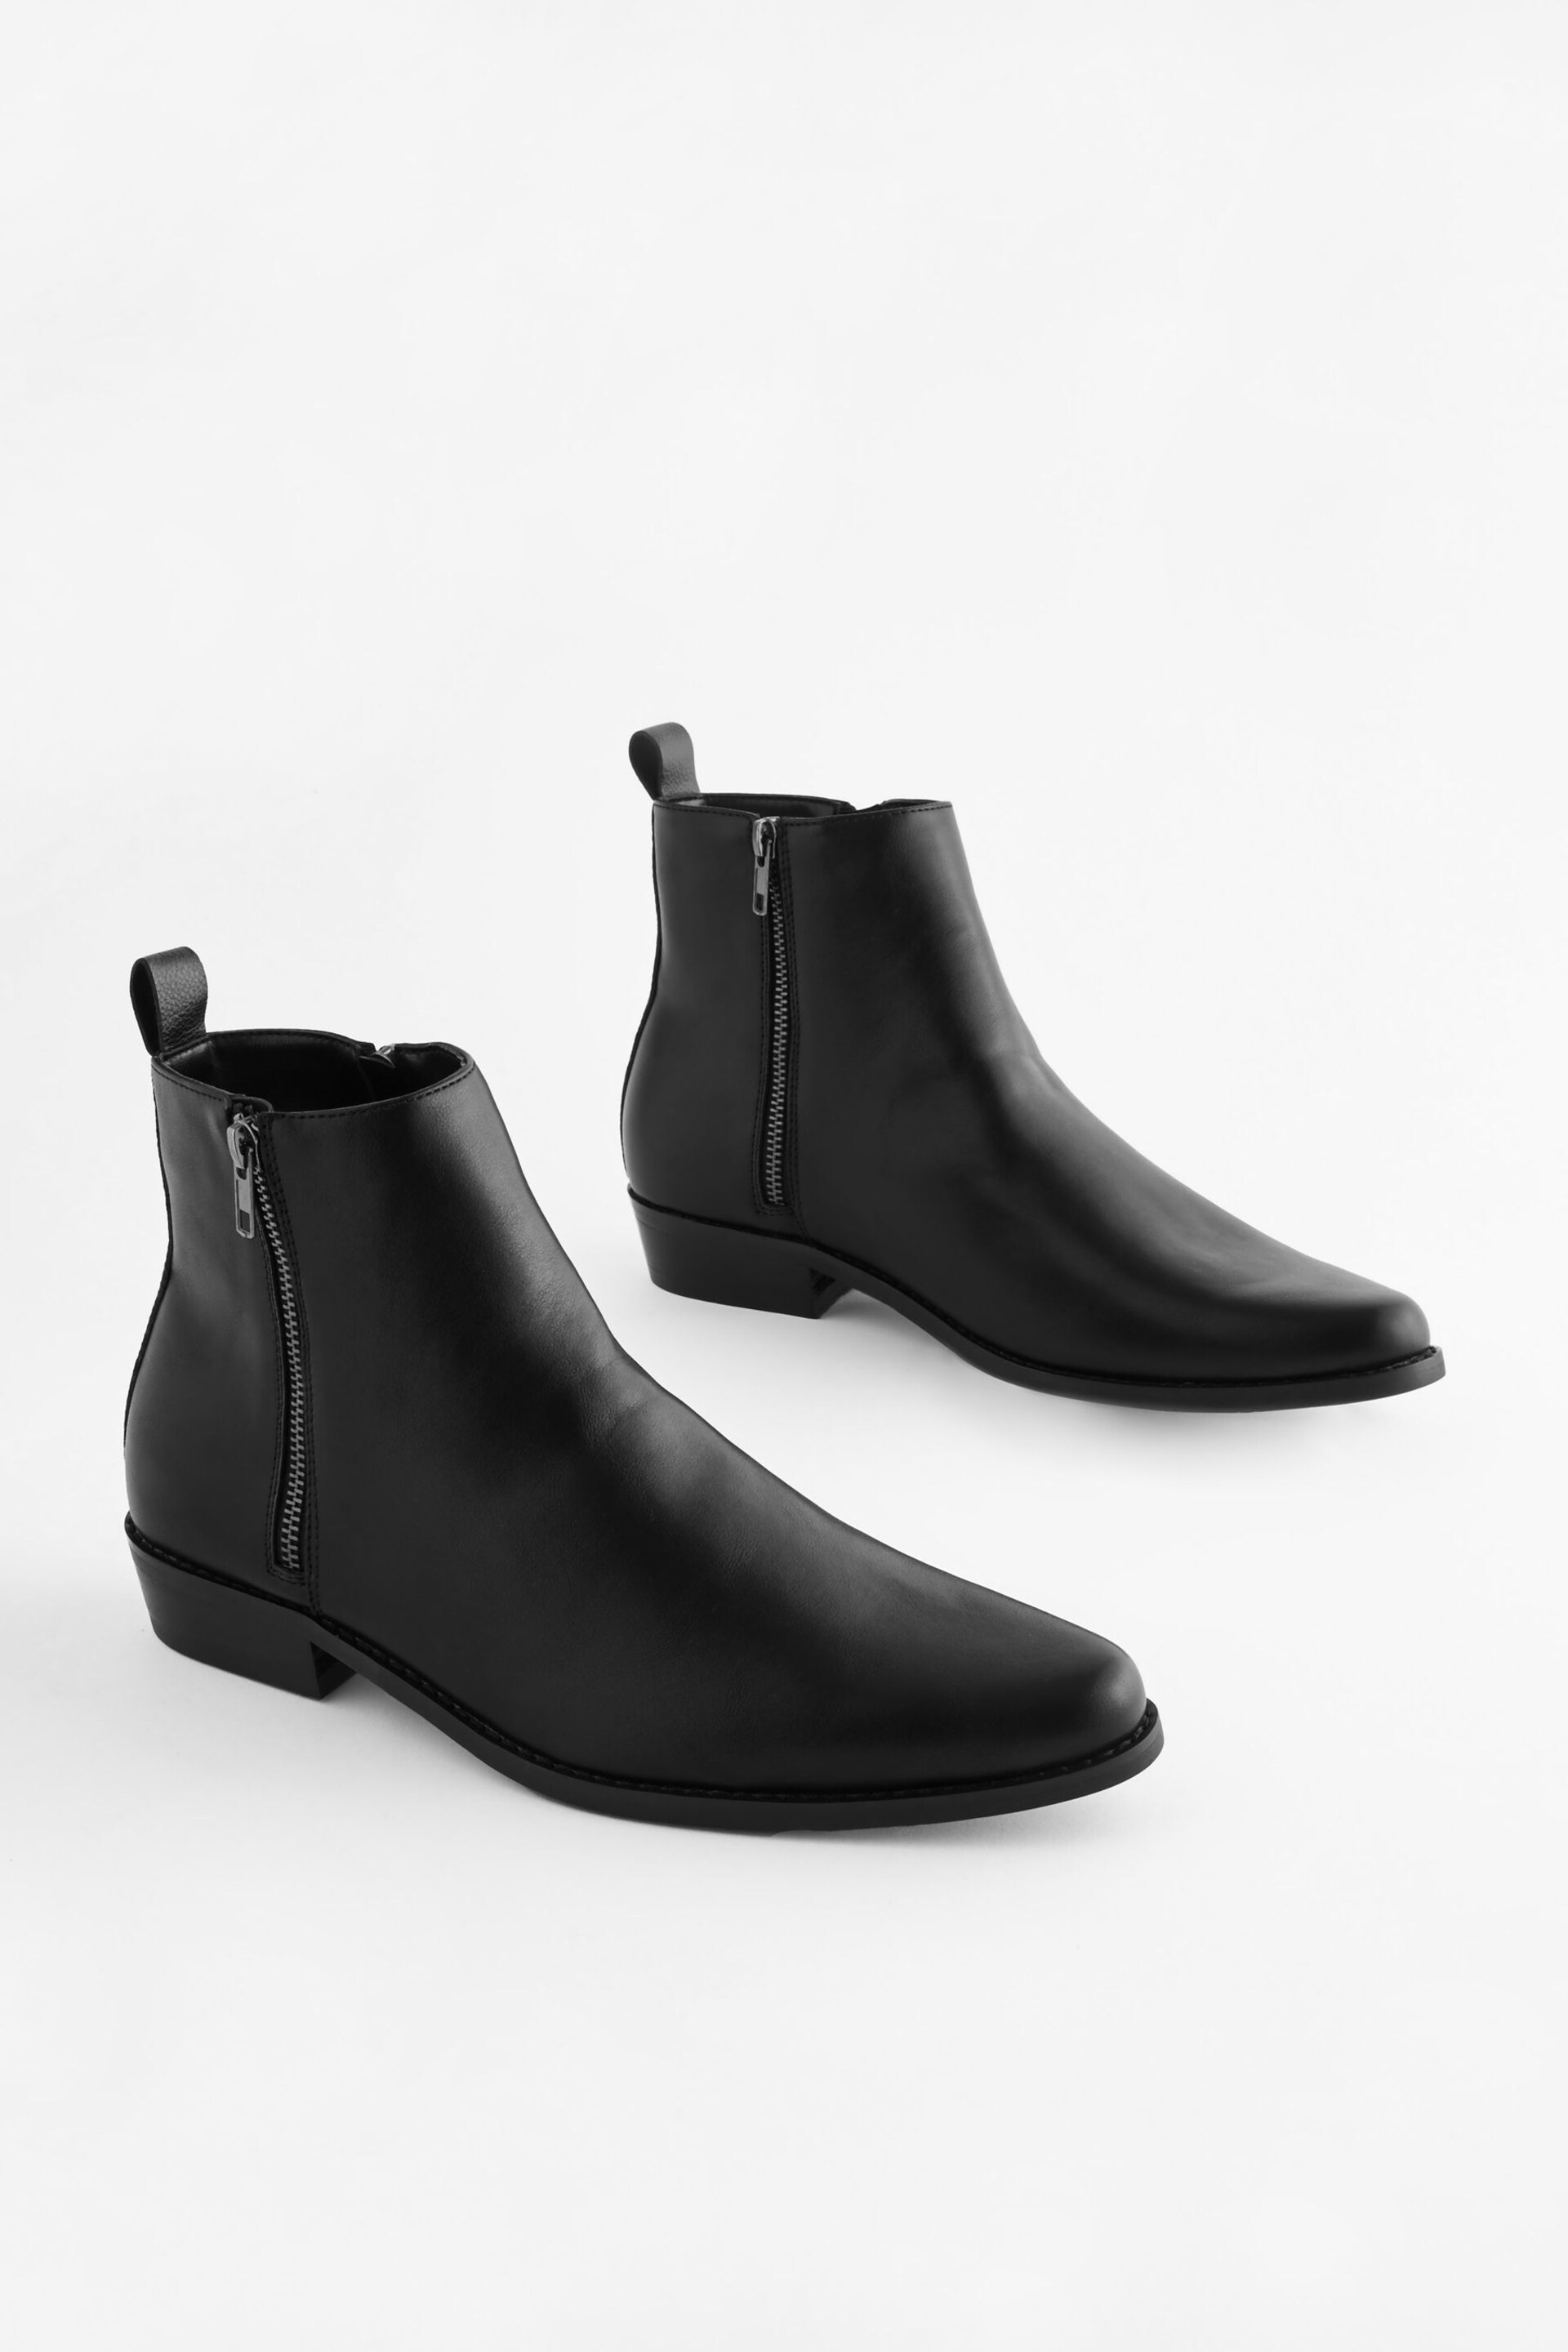 Black EDIT Zip Chelsea Boots - Image 1 of 8